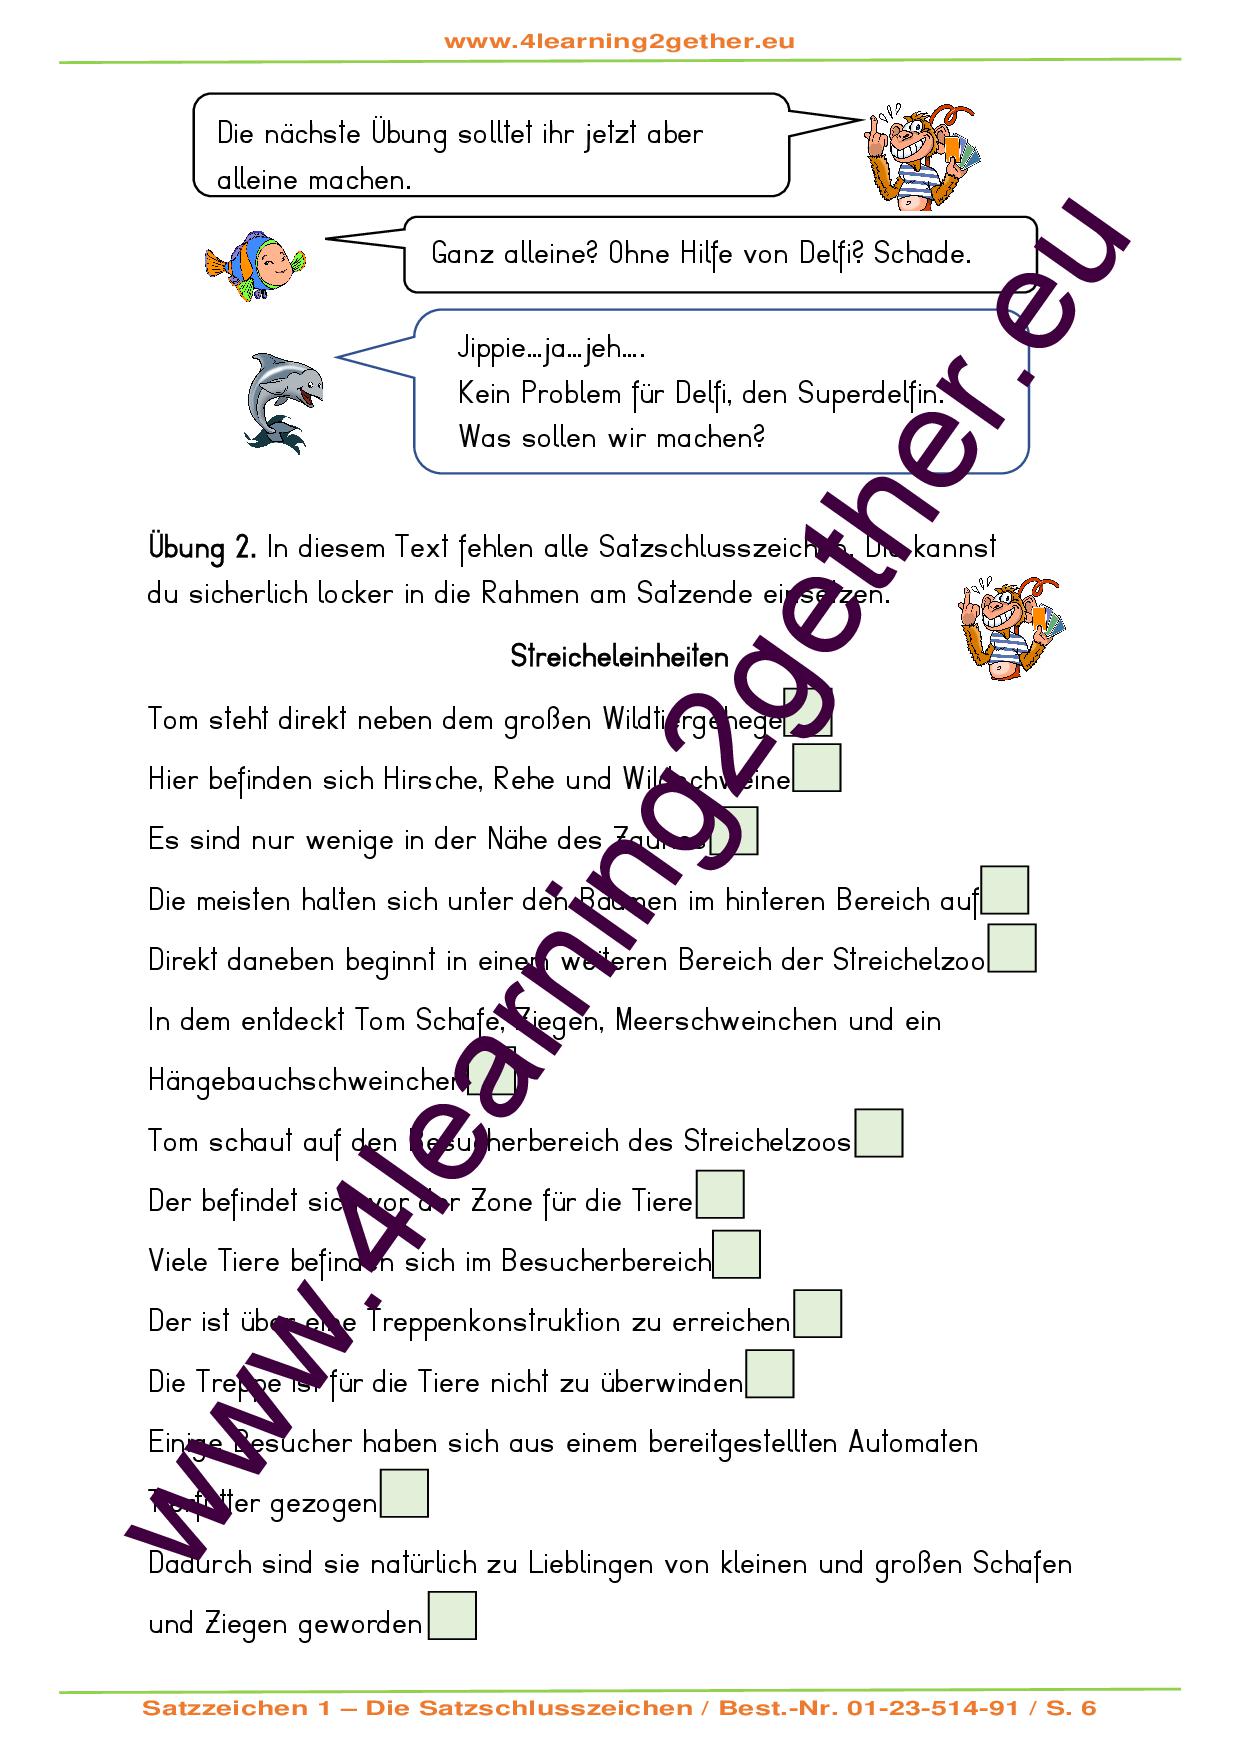 Bewegte Rechtschreibung / Satzzeichen 1 / Die Satzschlusszeichen / Bearb. Word, 18 S., 7 - 8 J.